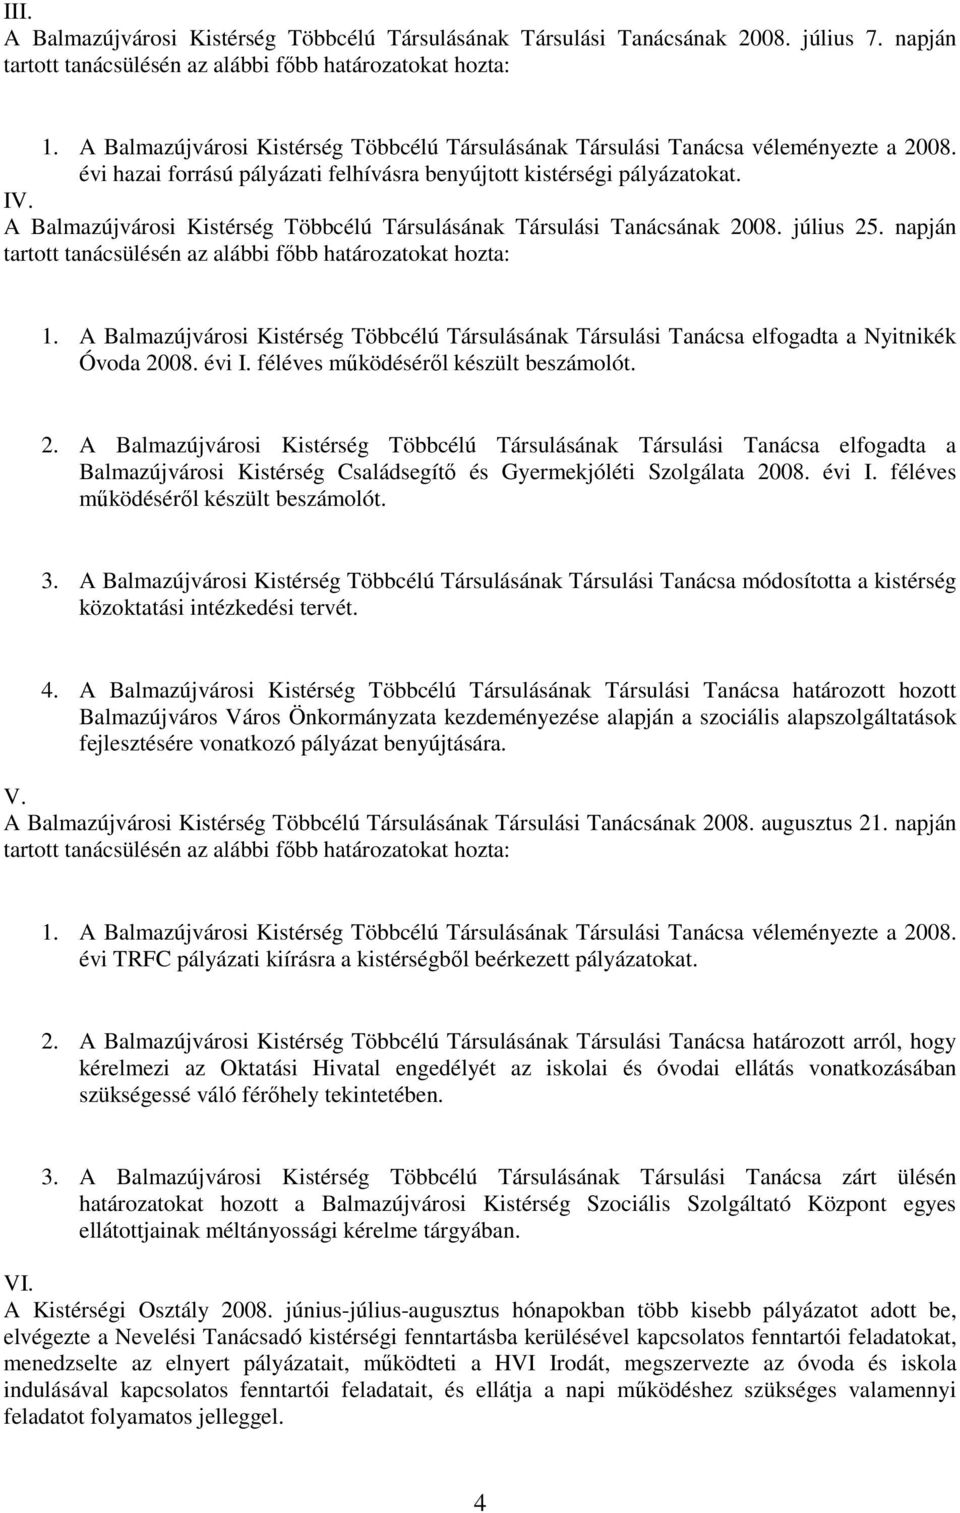 A Balmazújvárosi Kistérség Többcélú Társulásának Társulási Tanácsának 2008. július 25. napján tartott tanácsülésén az alábbi fıbb határozatokat hozta: 1.